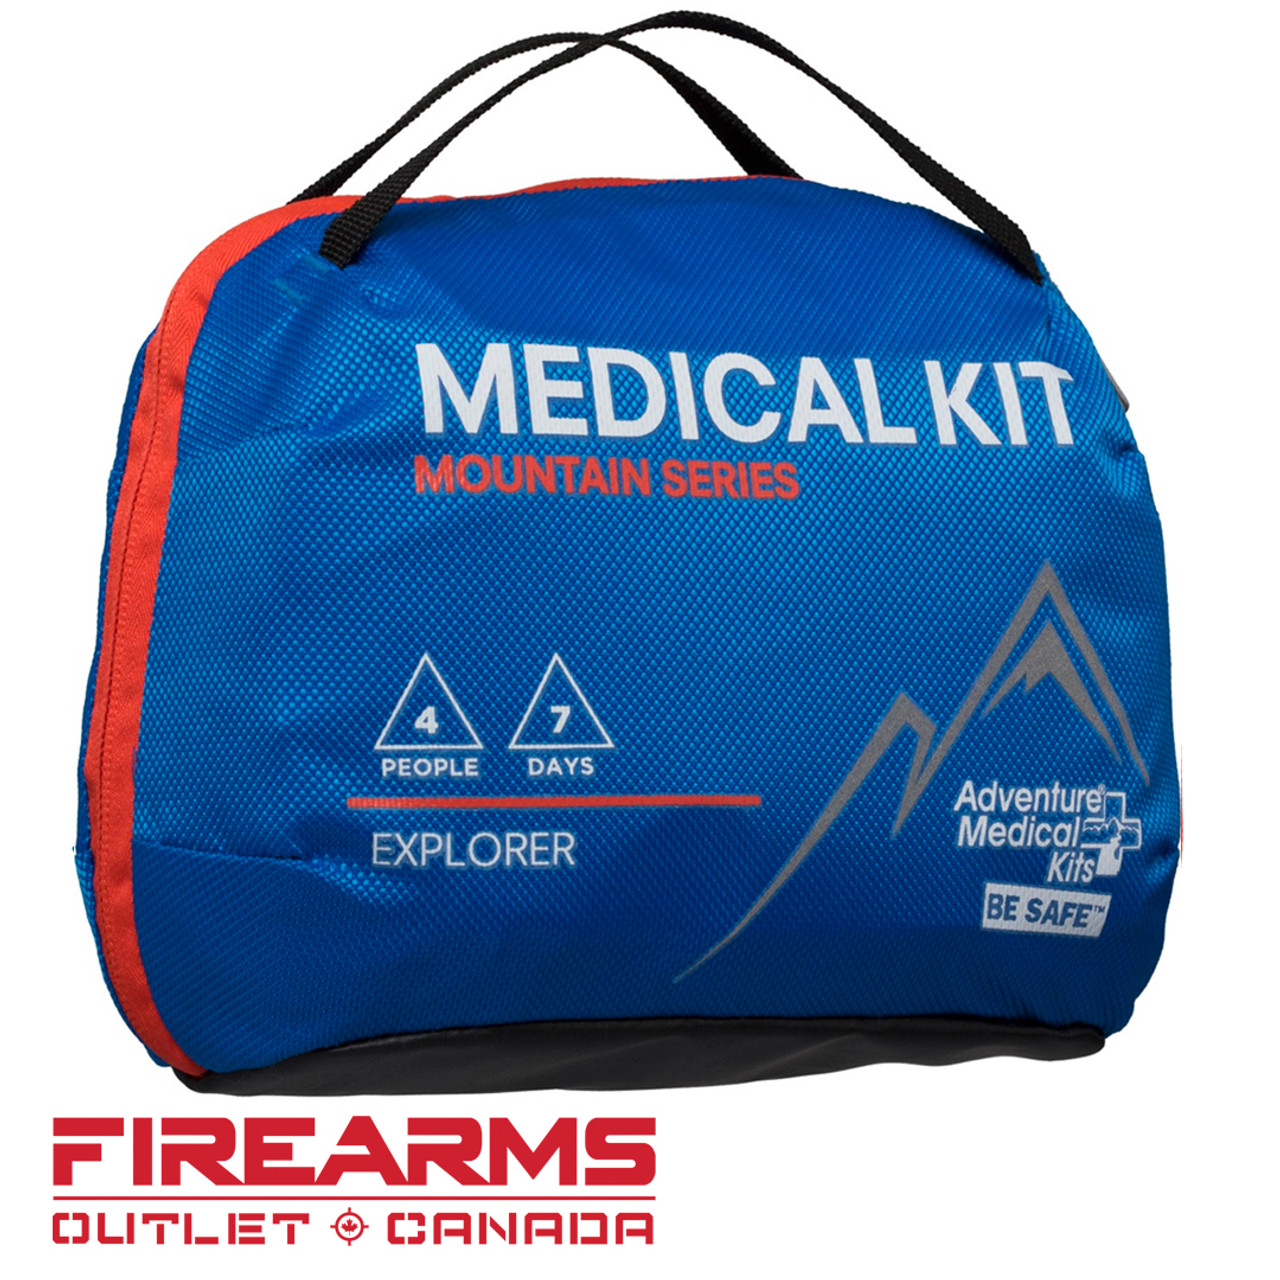 Adventure Medical Kits - Mountain Explorer Medical Kit (4 People, 7 Days) [2075-3005]